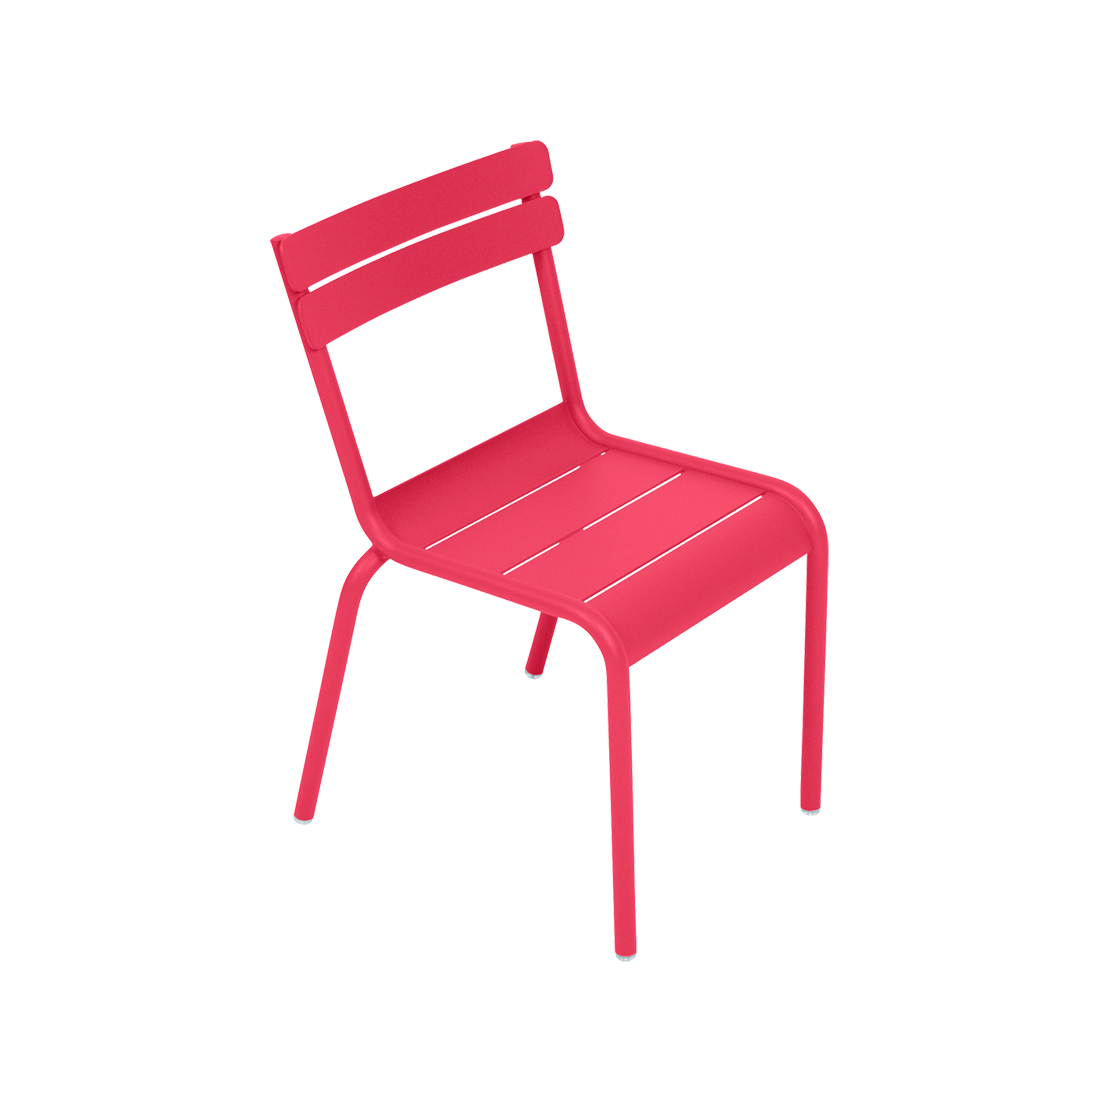 chaise enfant, chaise de jardin pour enfant, chaise metal enfant, chaise enfant rose